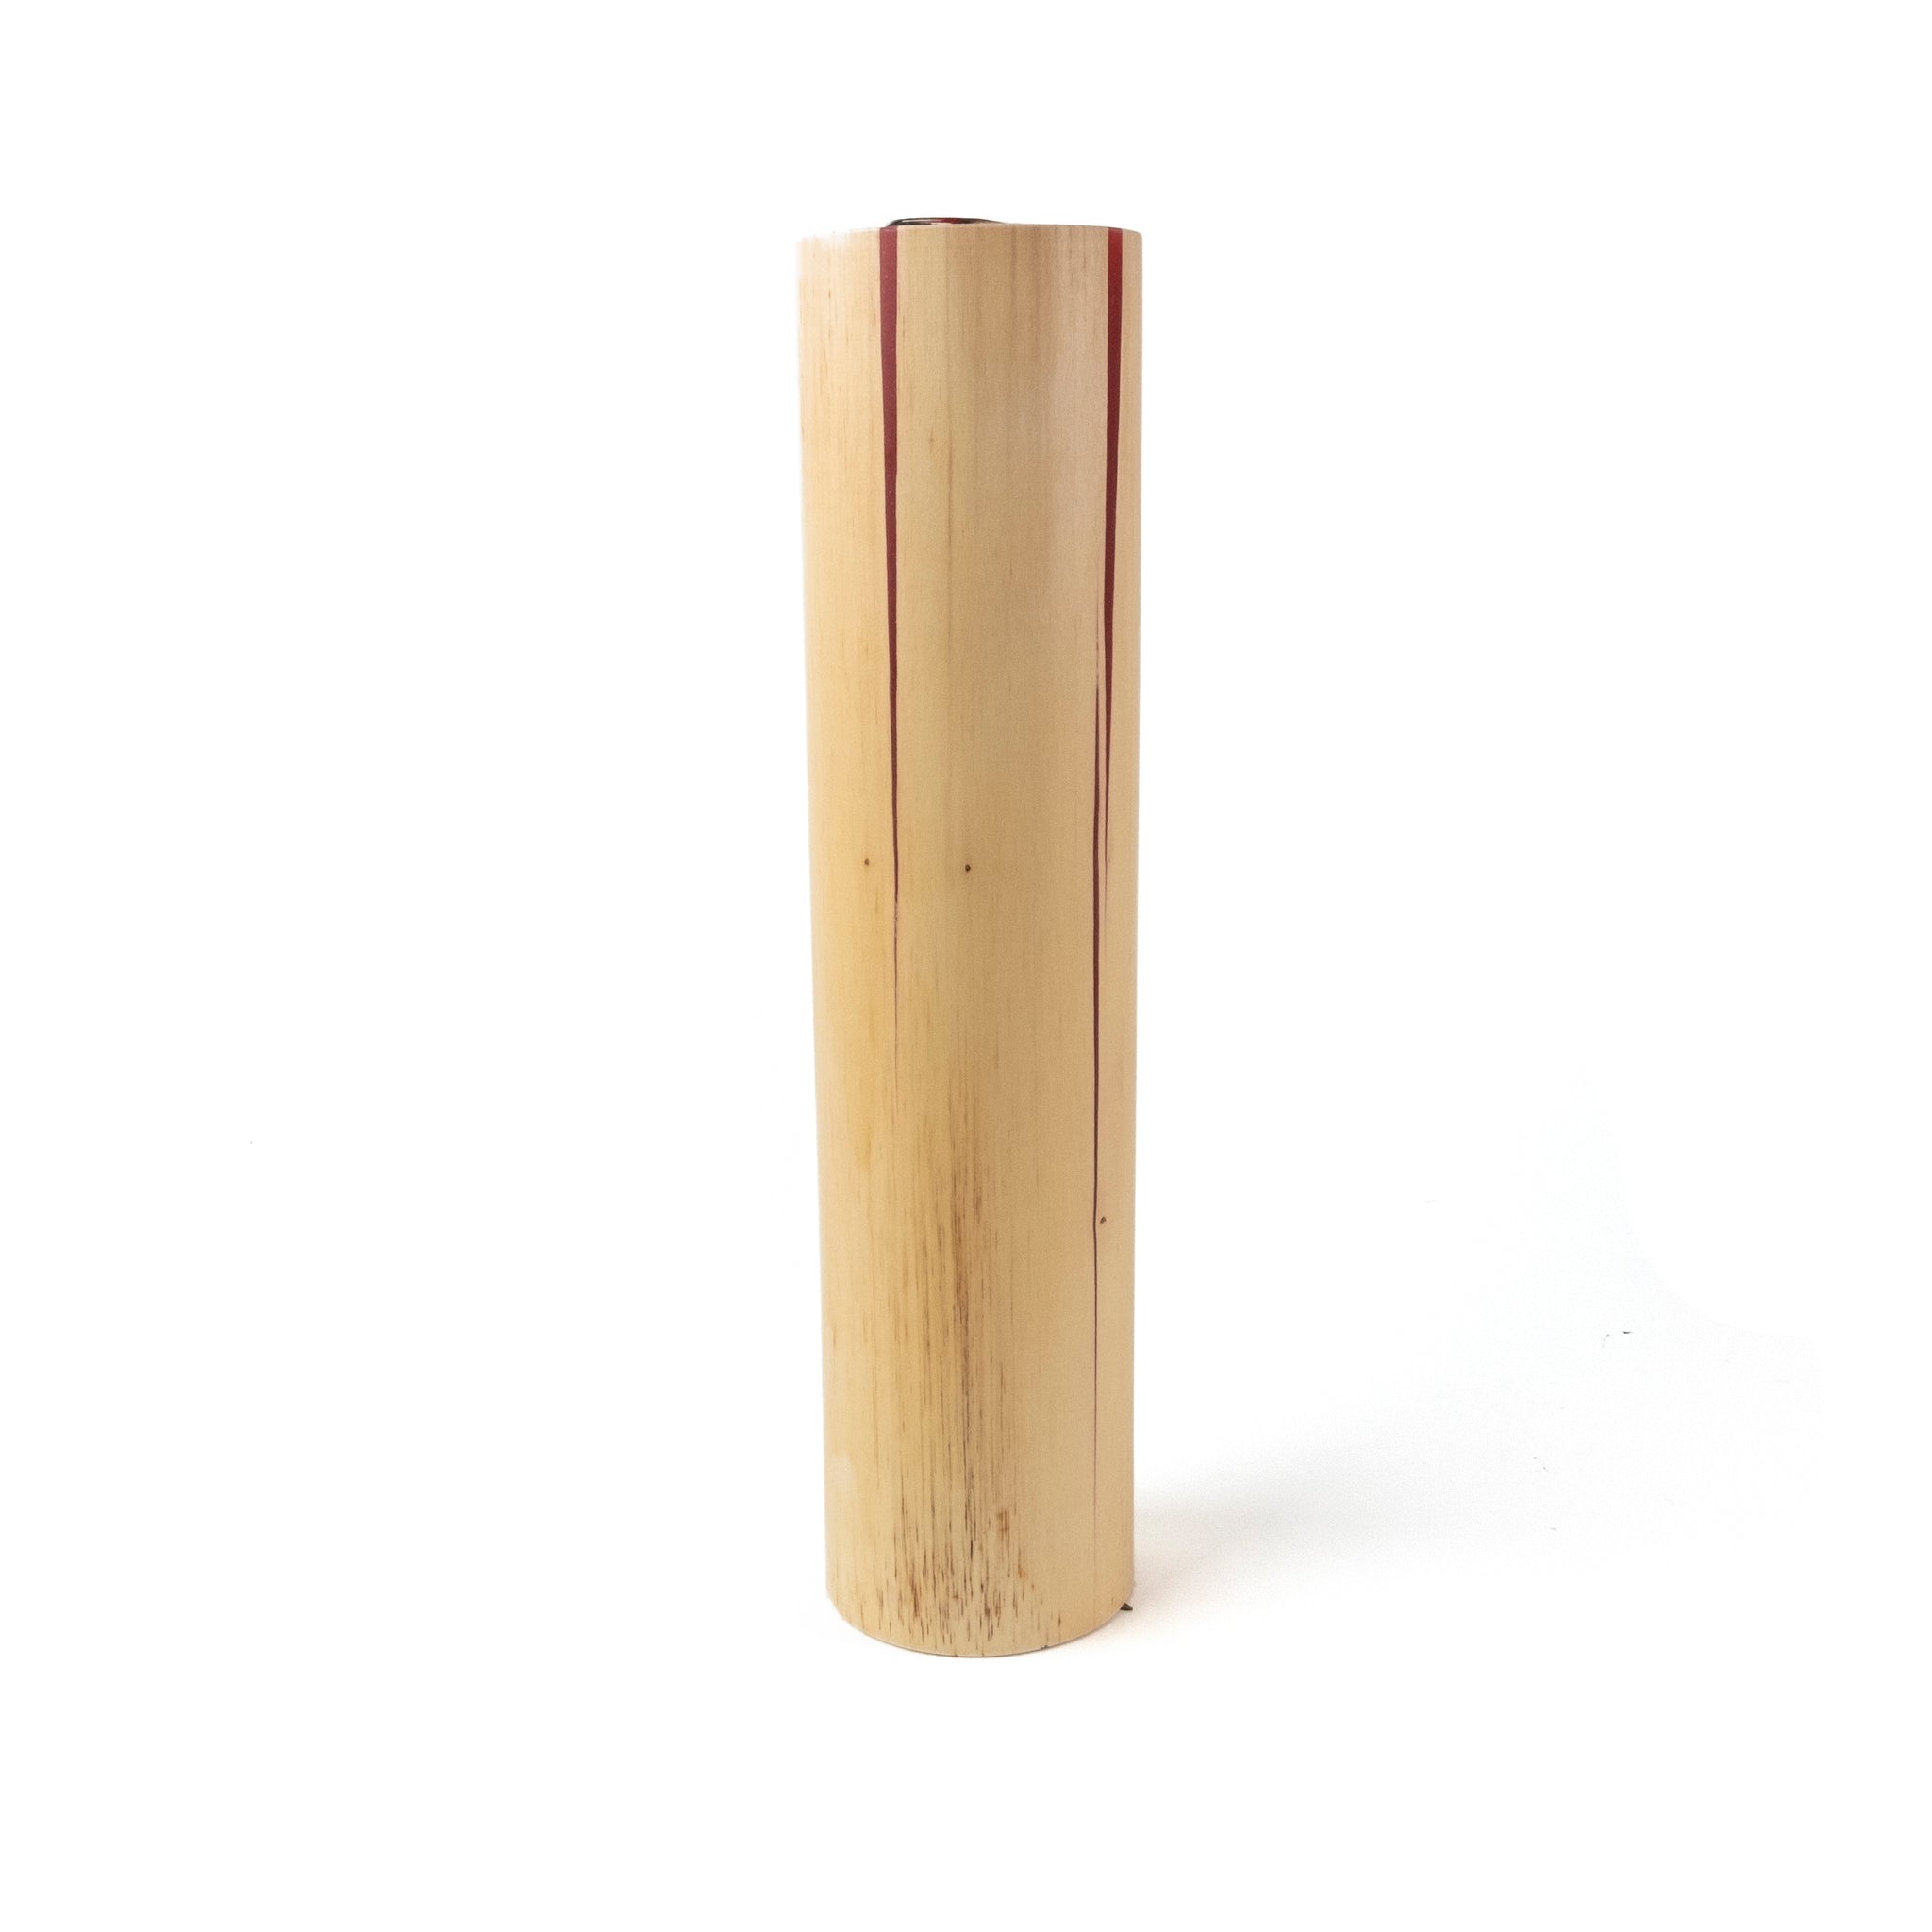 Fuze Vase • Rood • Designmarket.today • De Fuse Vase is gemaakt van een natuurlijk stuk bamboe. De barsten van de bamboe zijn opgevuld met een gekleurde hars. Dit geeft extra nadruk op het de schoonheid van het materiaal. Hierdoor is iedere vaas uniek. Zowel door de tekening van de barsten, al de afmeting.